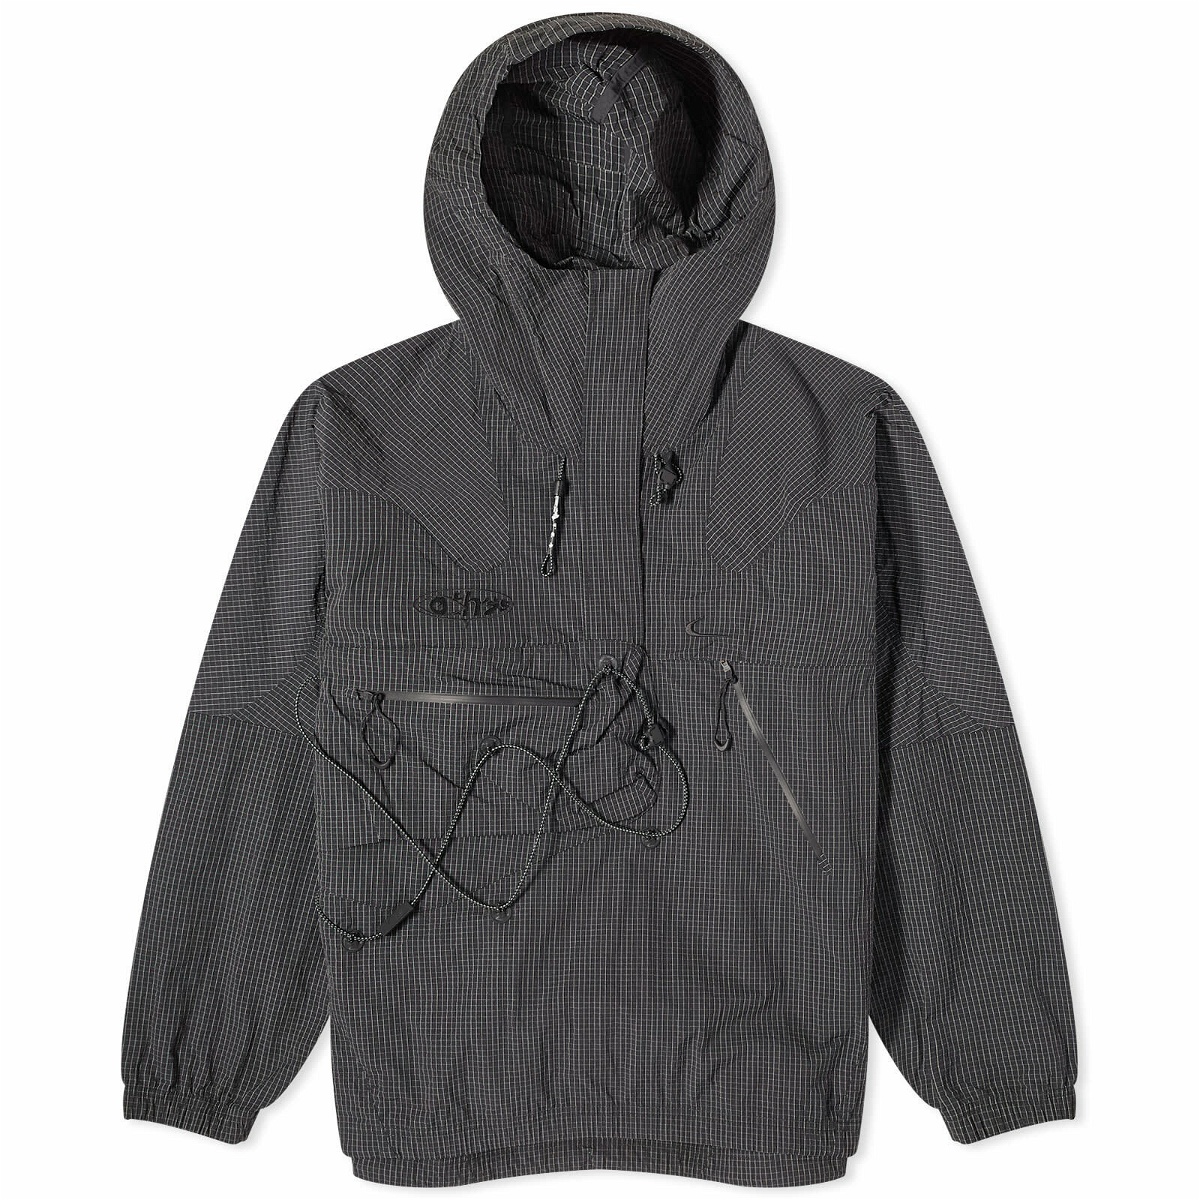  Nike Men's Sportswear Synthetic Fill Jacket Hooded Full Zip,  Obsidian/Obsidian/Obsidian/Sail, XX-Large : Sports & Outdoors